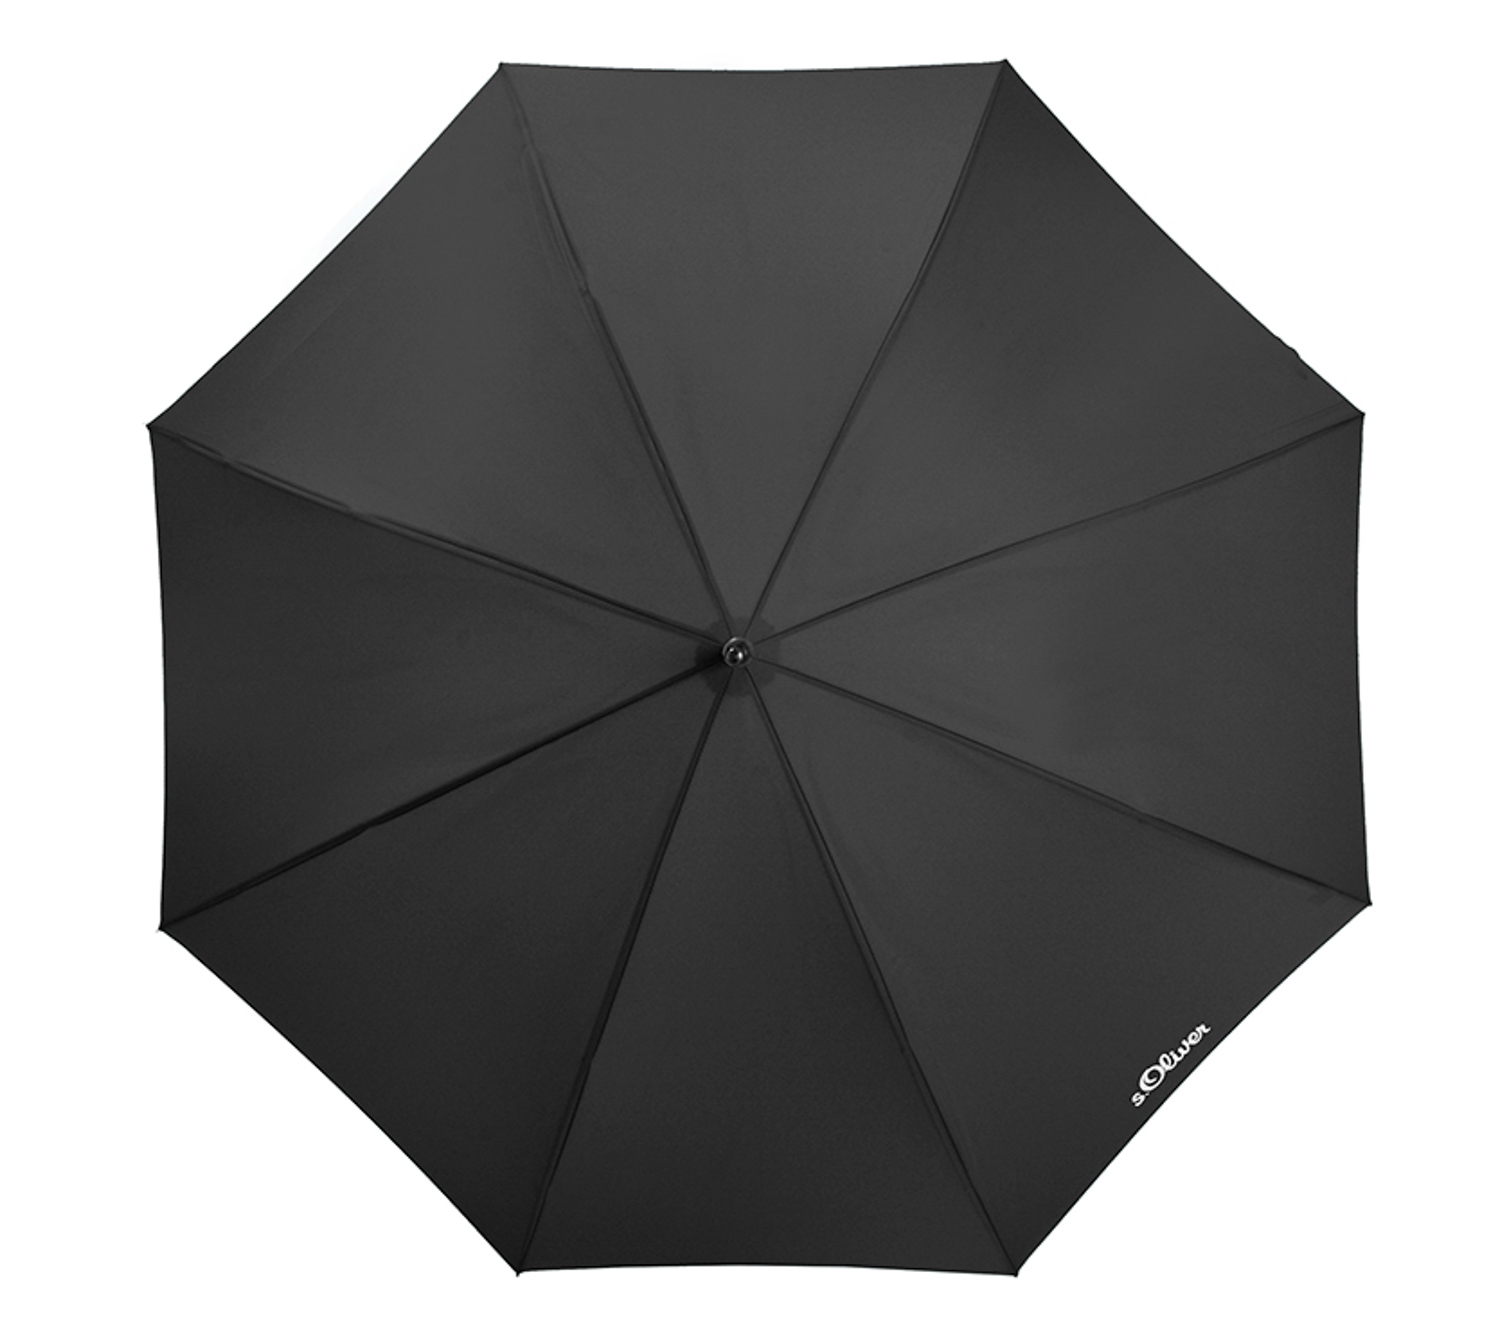 Regenschirm Mini S.Oliver Smart in schwarz Taschenschirm Schirm